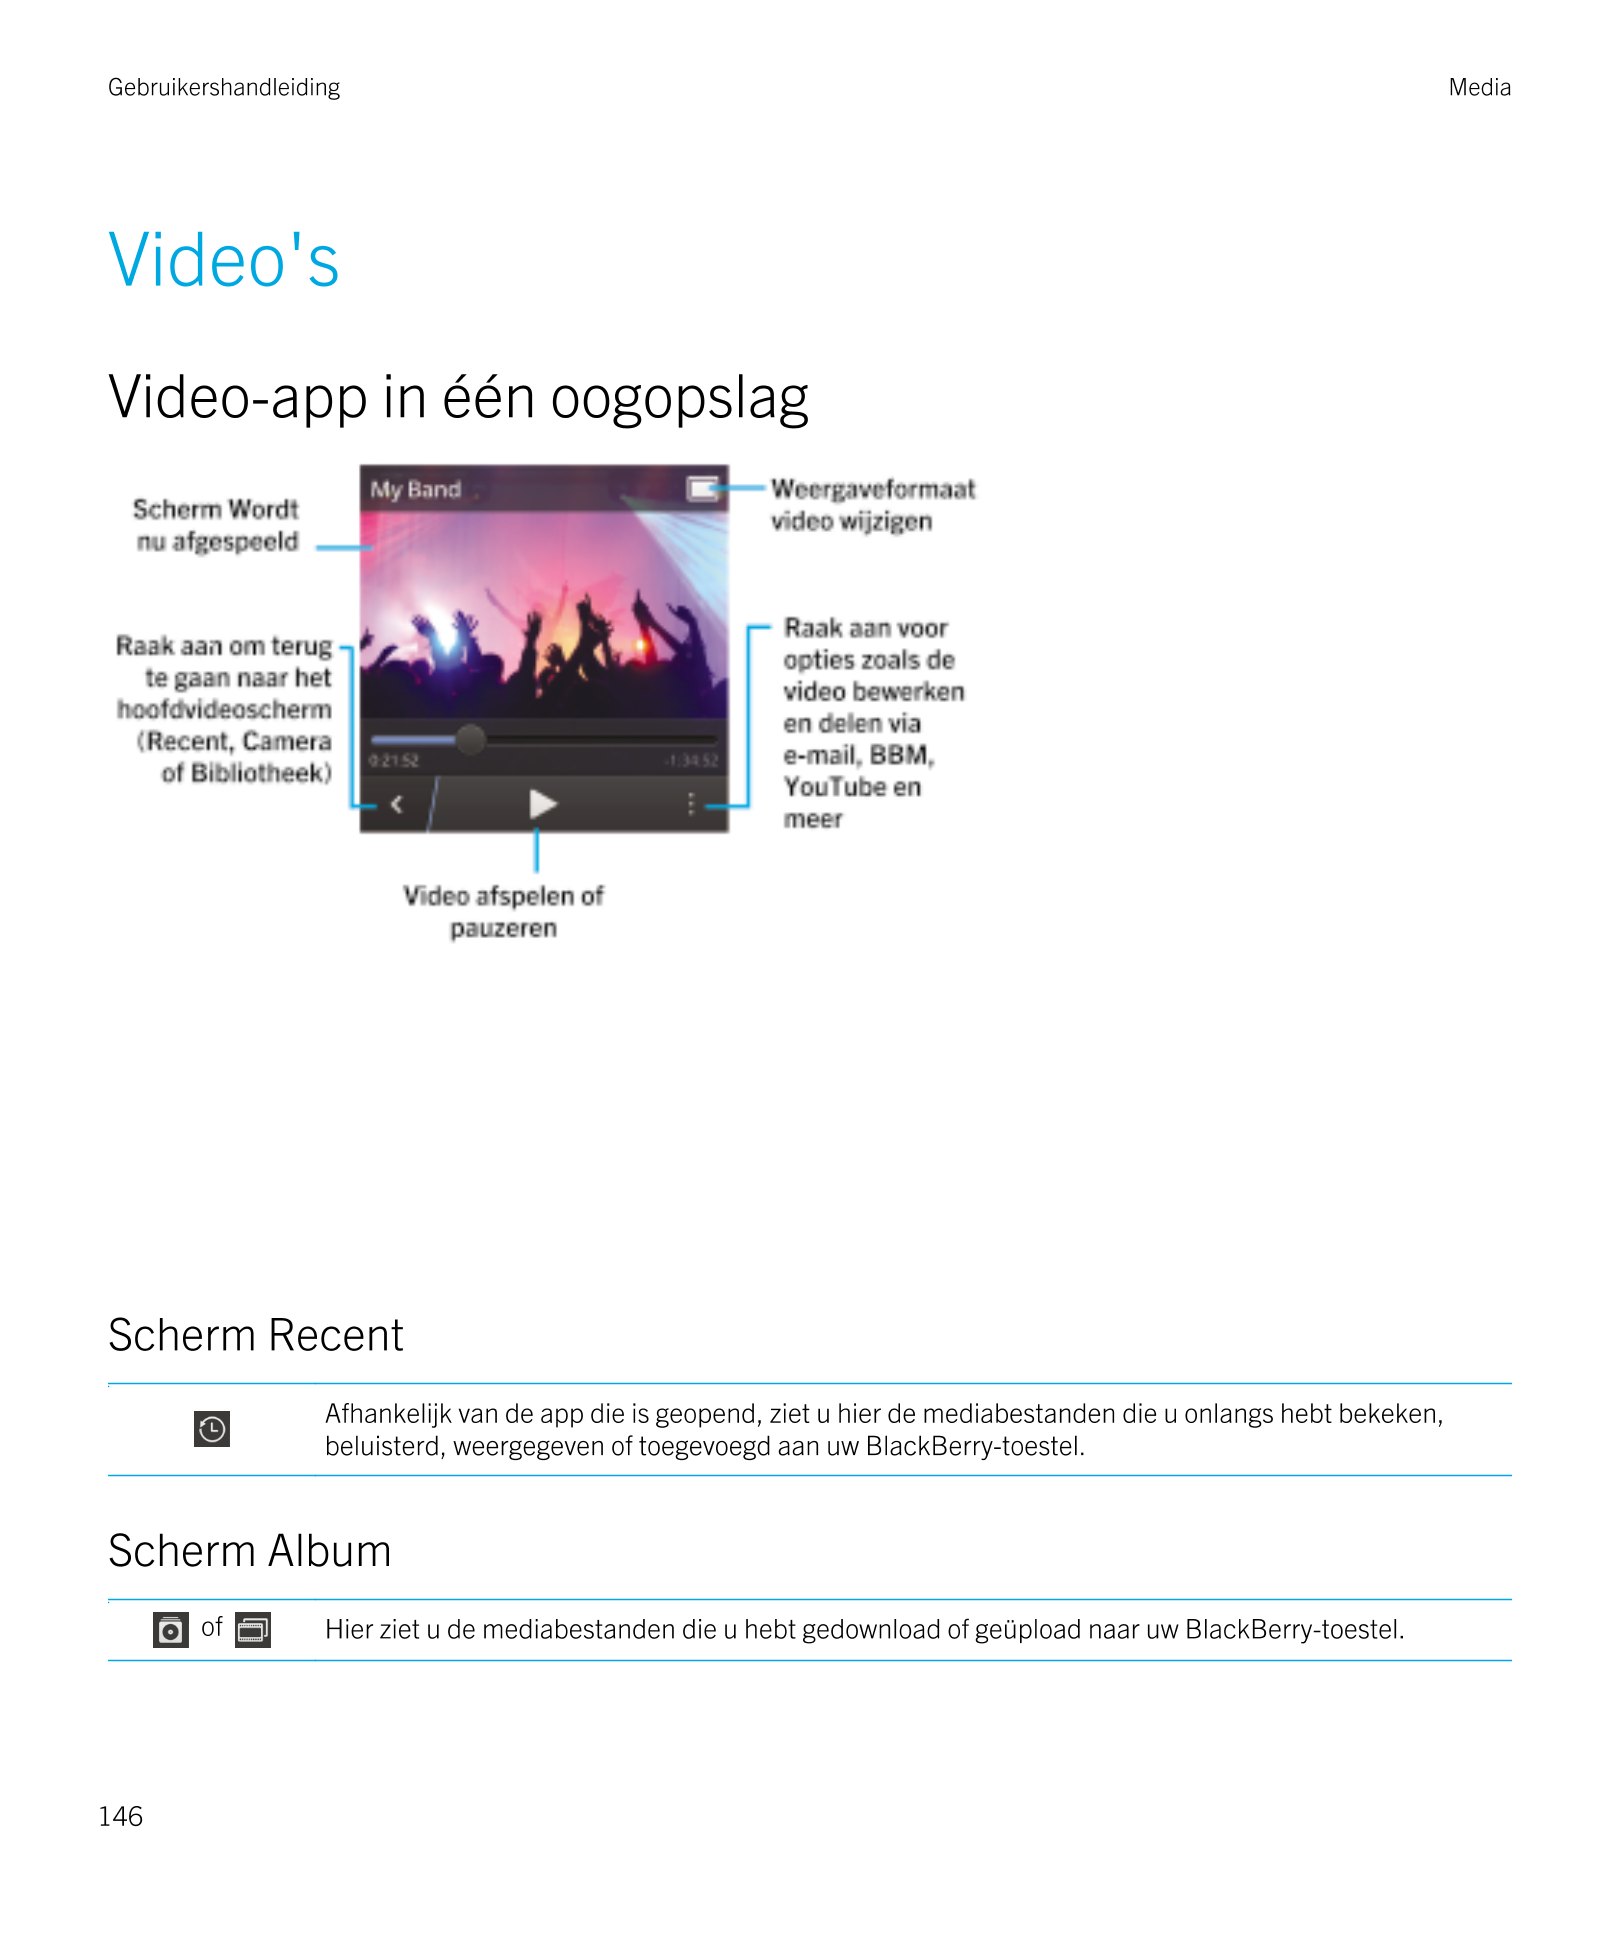 Gebruikershandleiding Media
Video's
Video-app in één oogopslag
Scherm Recent
Afhankelijk van de app die is geopend, ziet u hier 